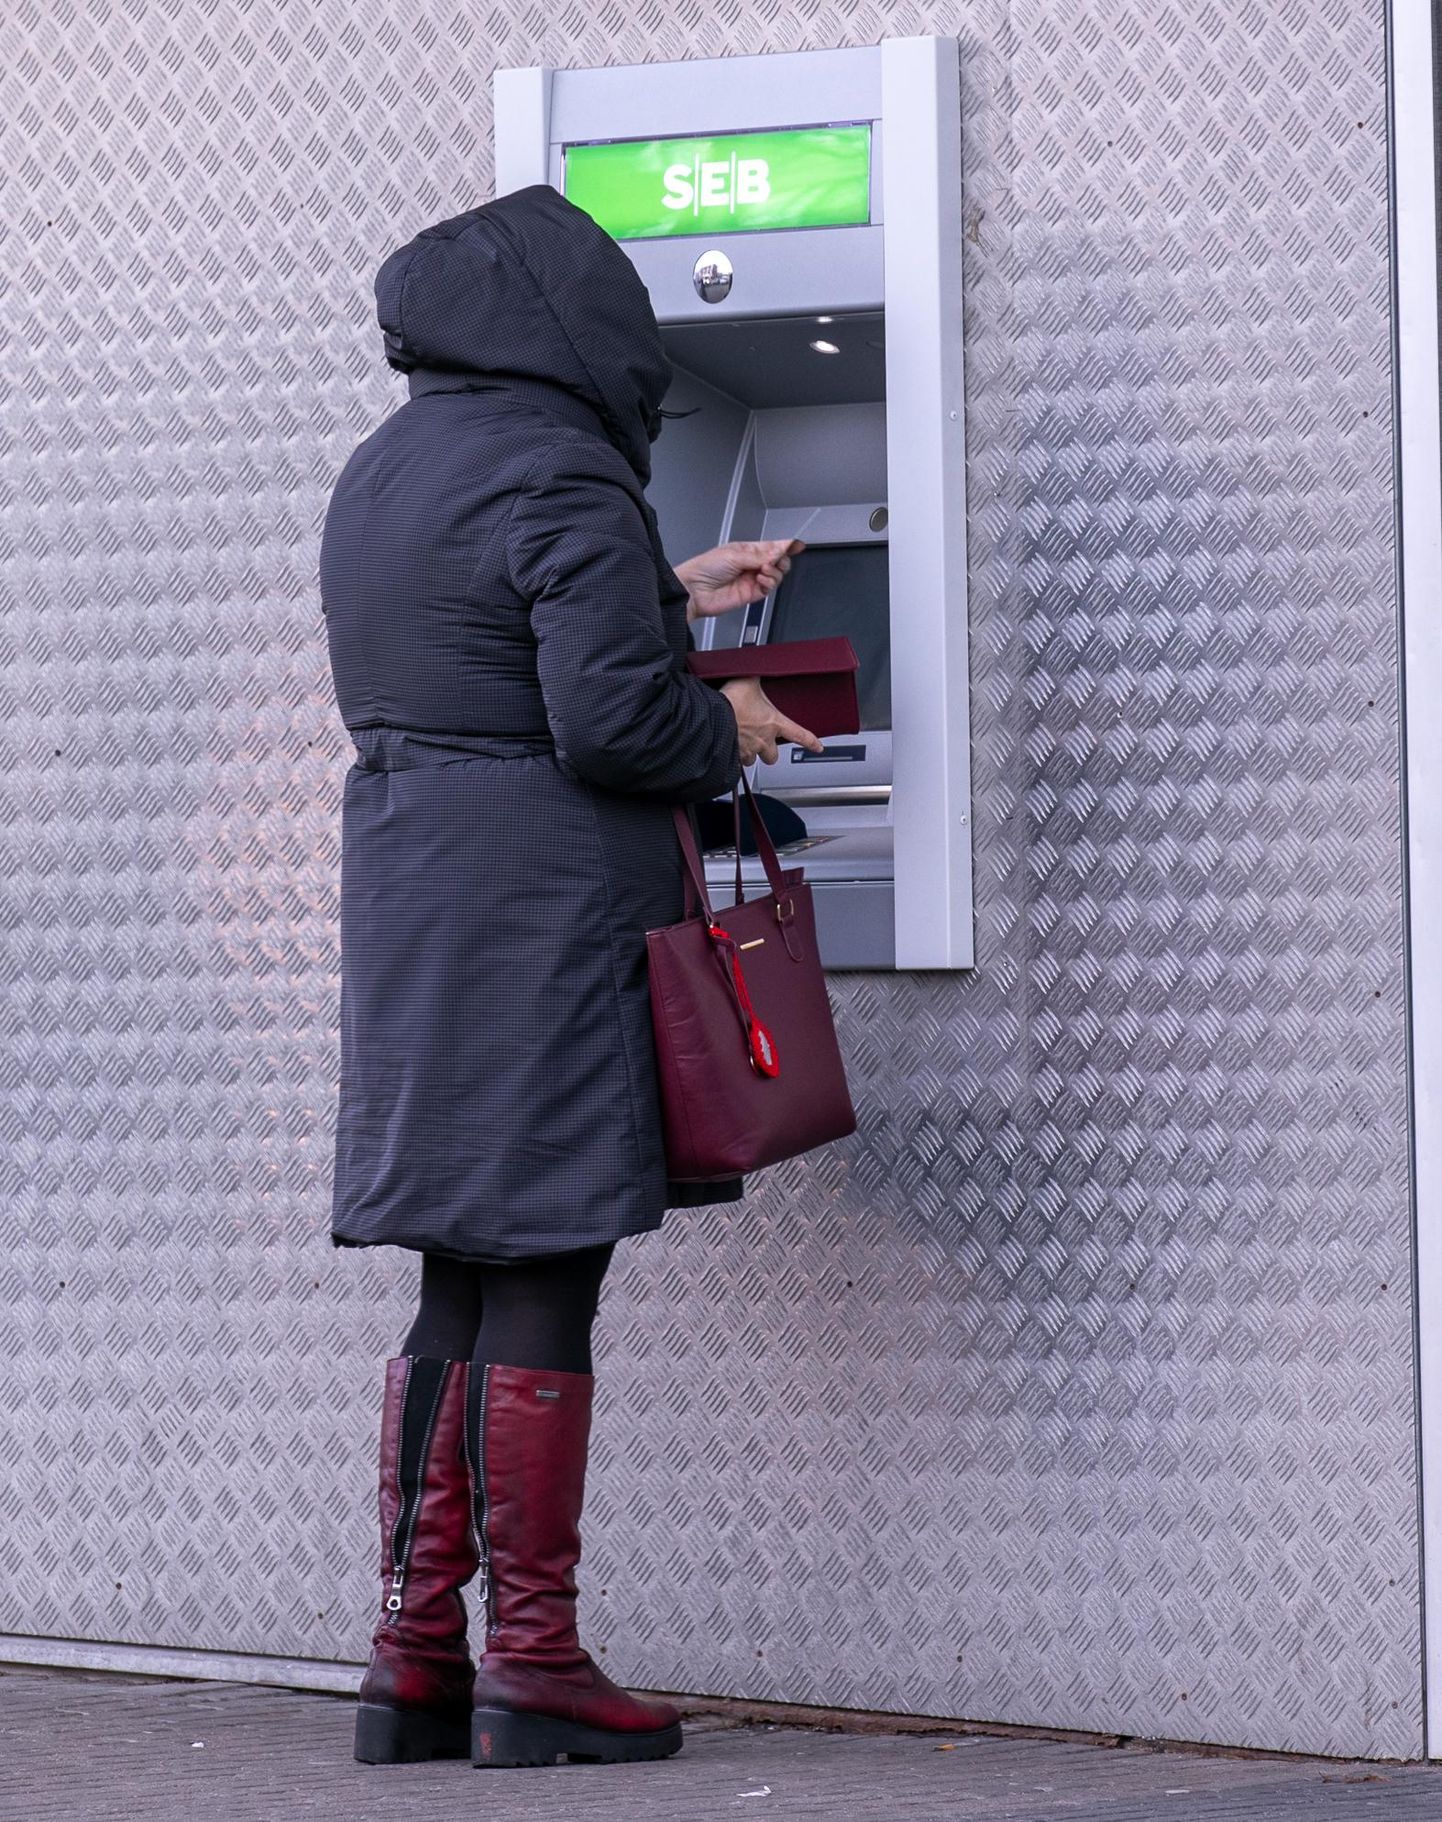 Sularahaautomaadid töötavad kõikjal Eestis tavapäraselt. Kuigi pangaautomaate puhastatakse regulaarselt, ei ole seda võimalik teha pärast iga kliendi teenindamist. Seetõttu on soovitatav pärast pangaautomaadi kasutamist käsi desinfitseerida.